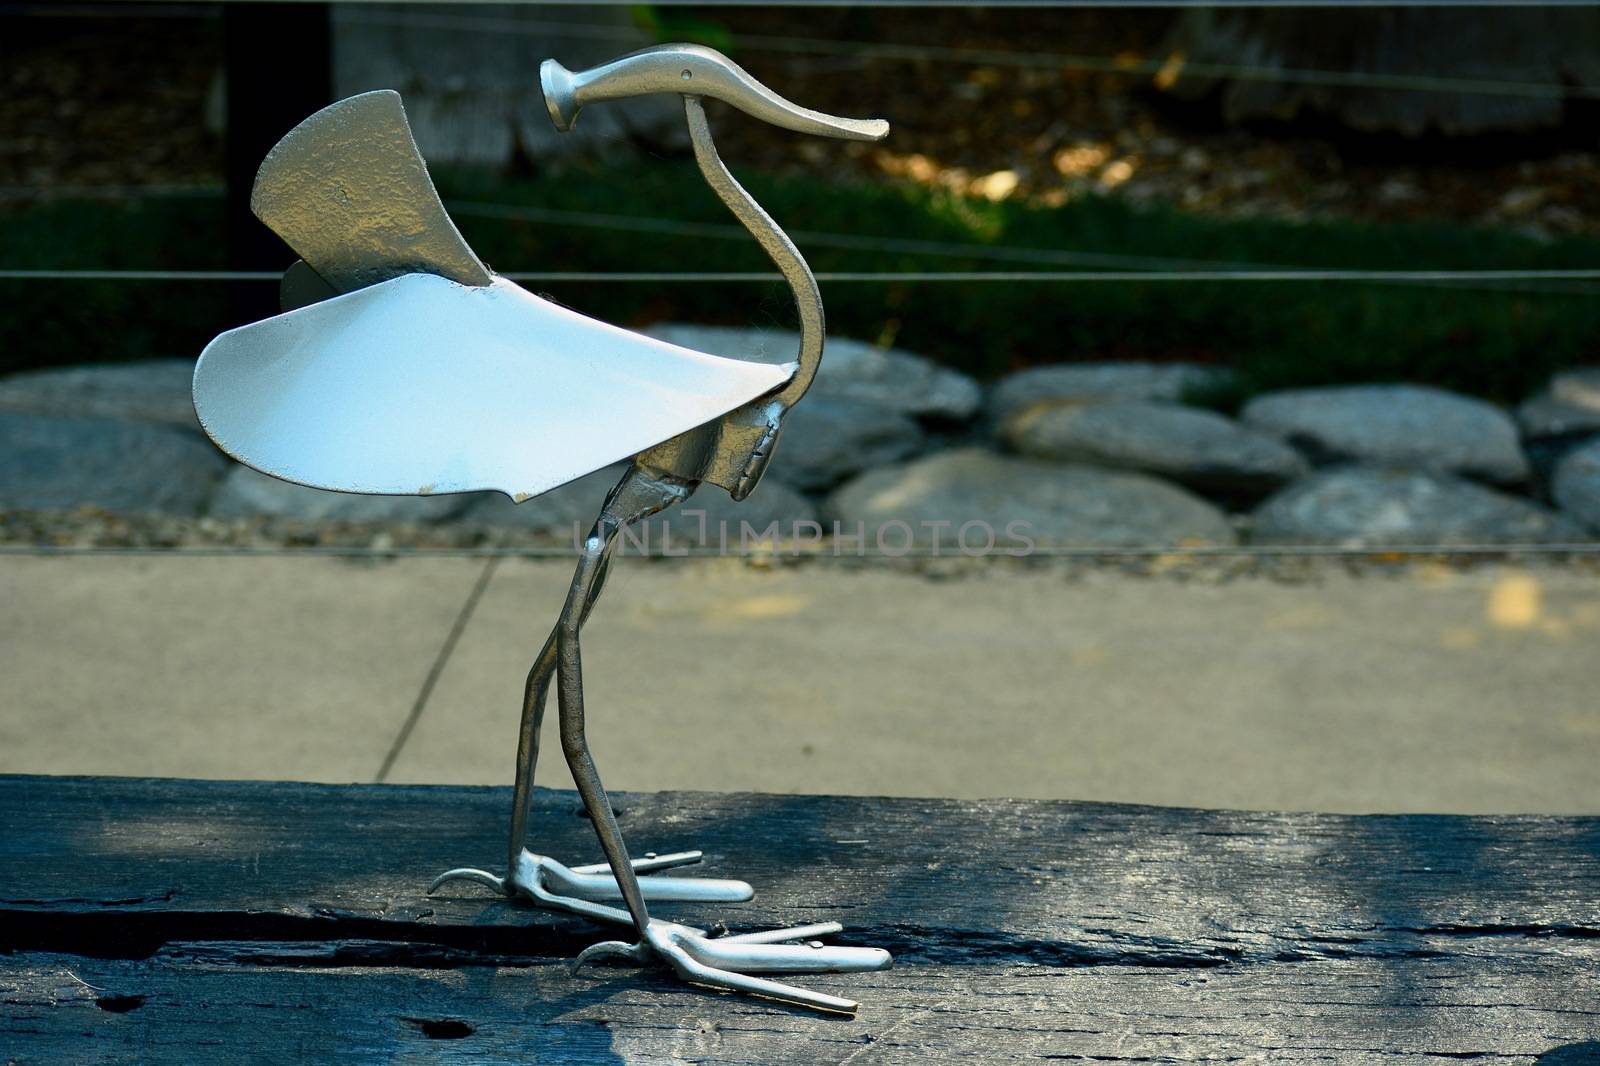 Modern sculpture; concept art; sculpture made of garden tools